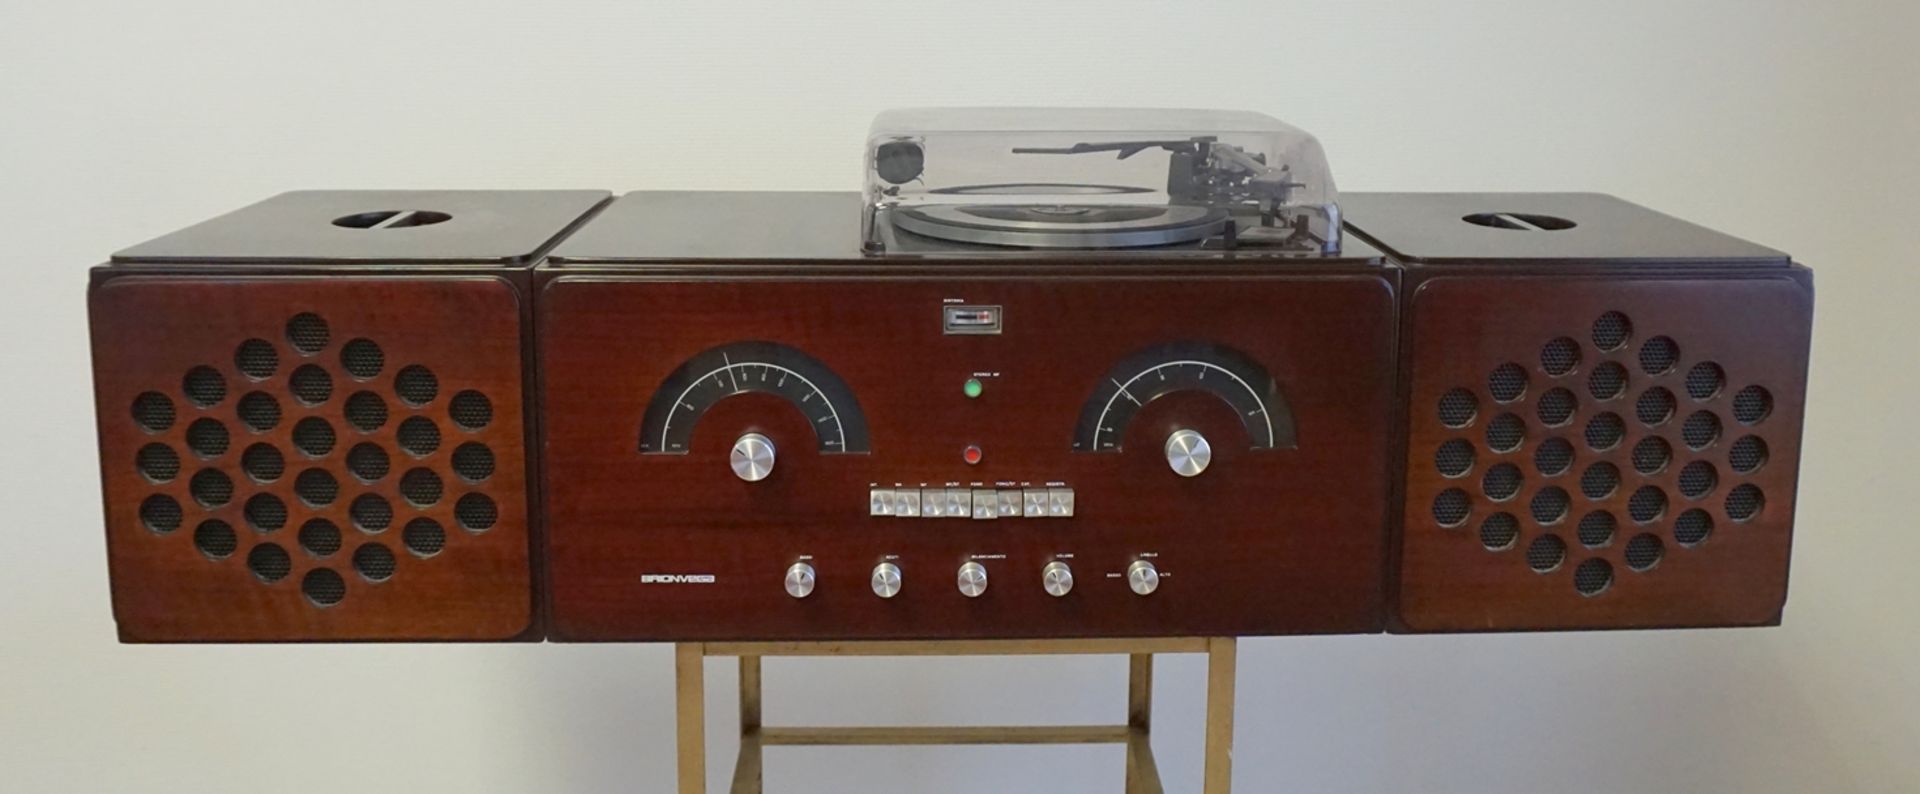 Modulare Stereoanlage Radiofonografo rr-126, Fratelli Castiglioni für Brionvega, Italien, ca. 1965